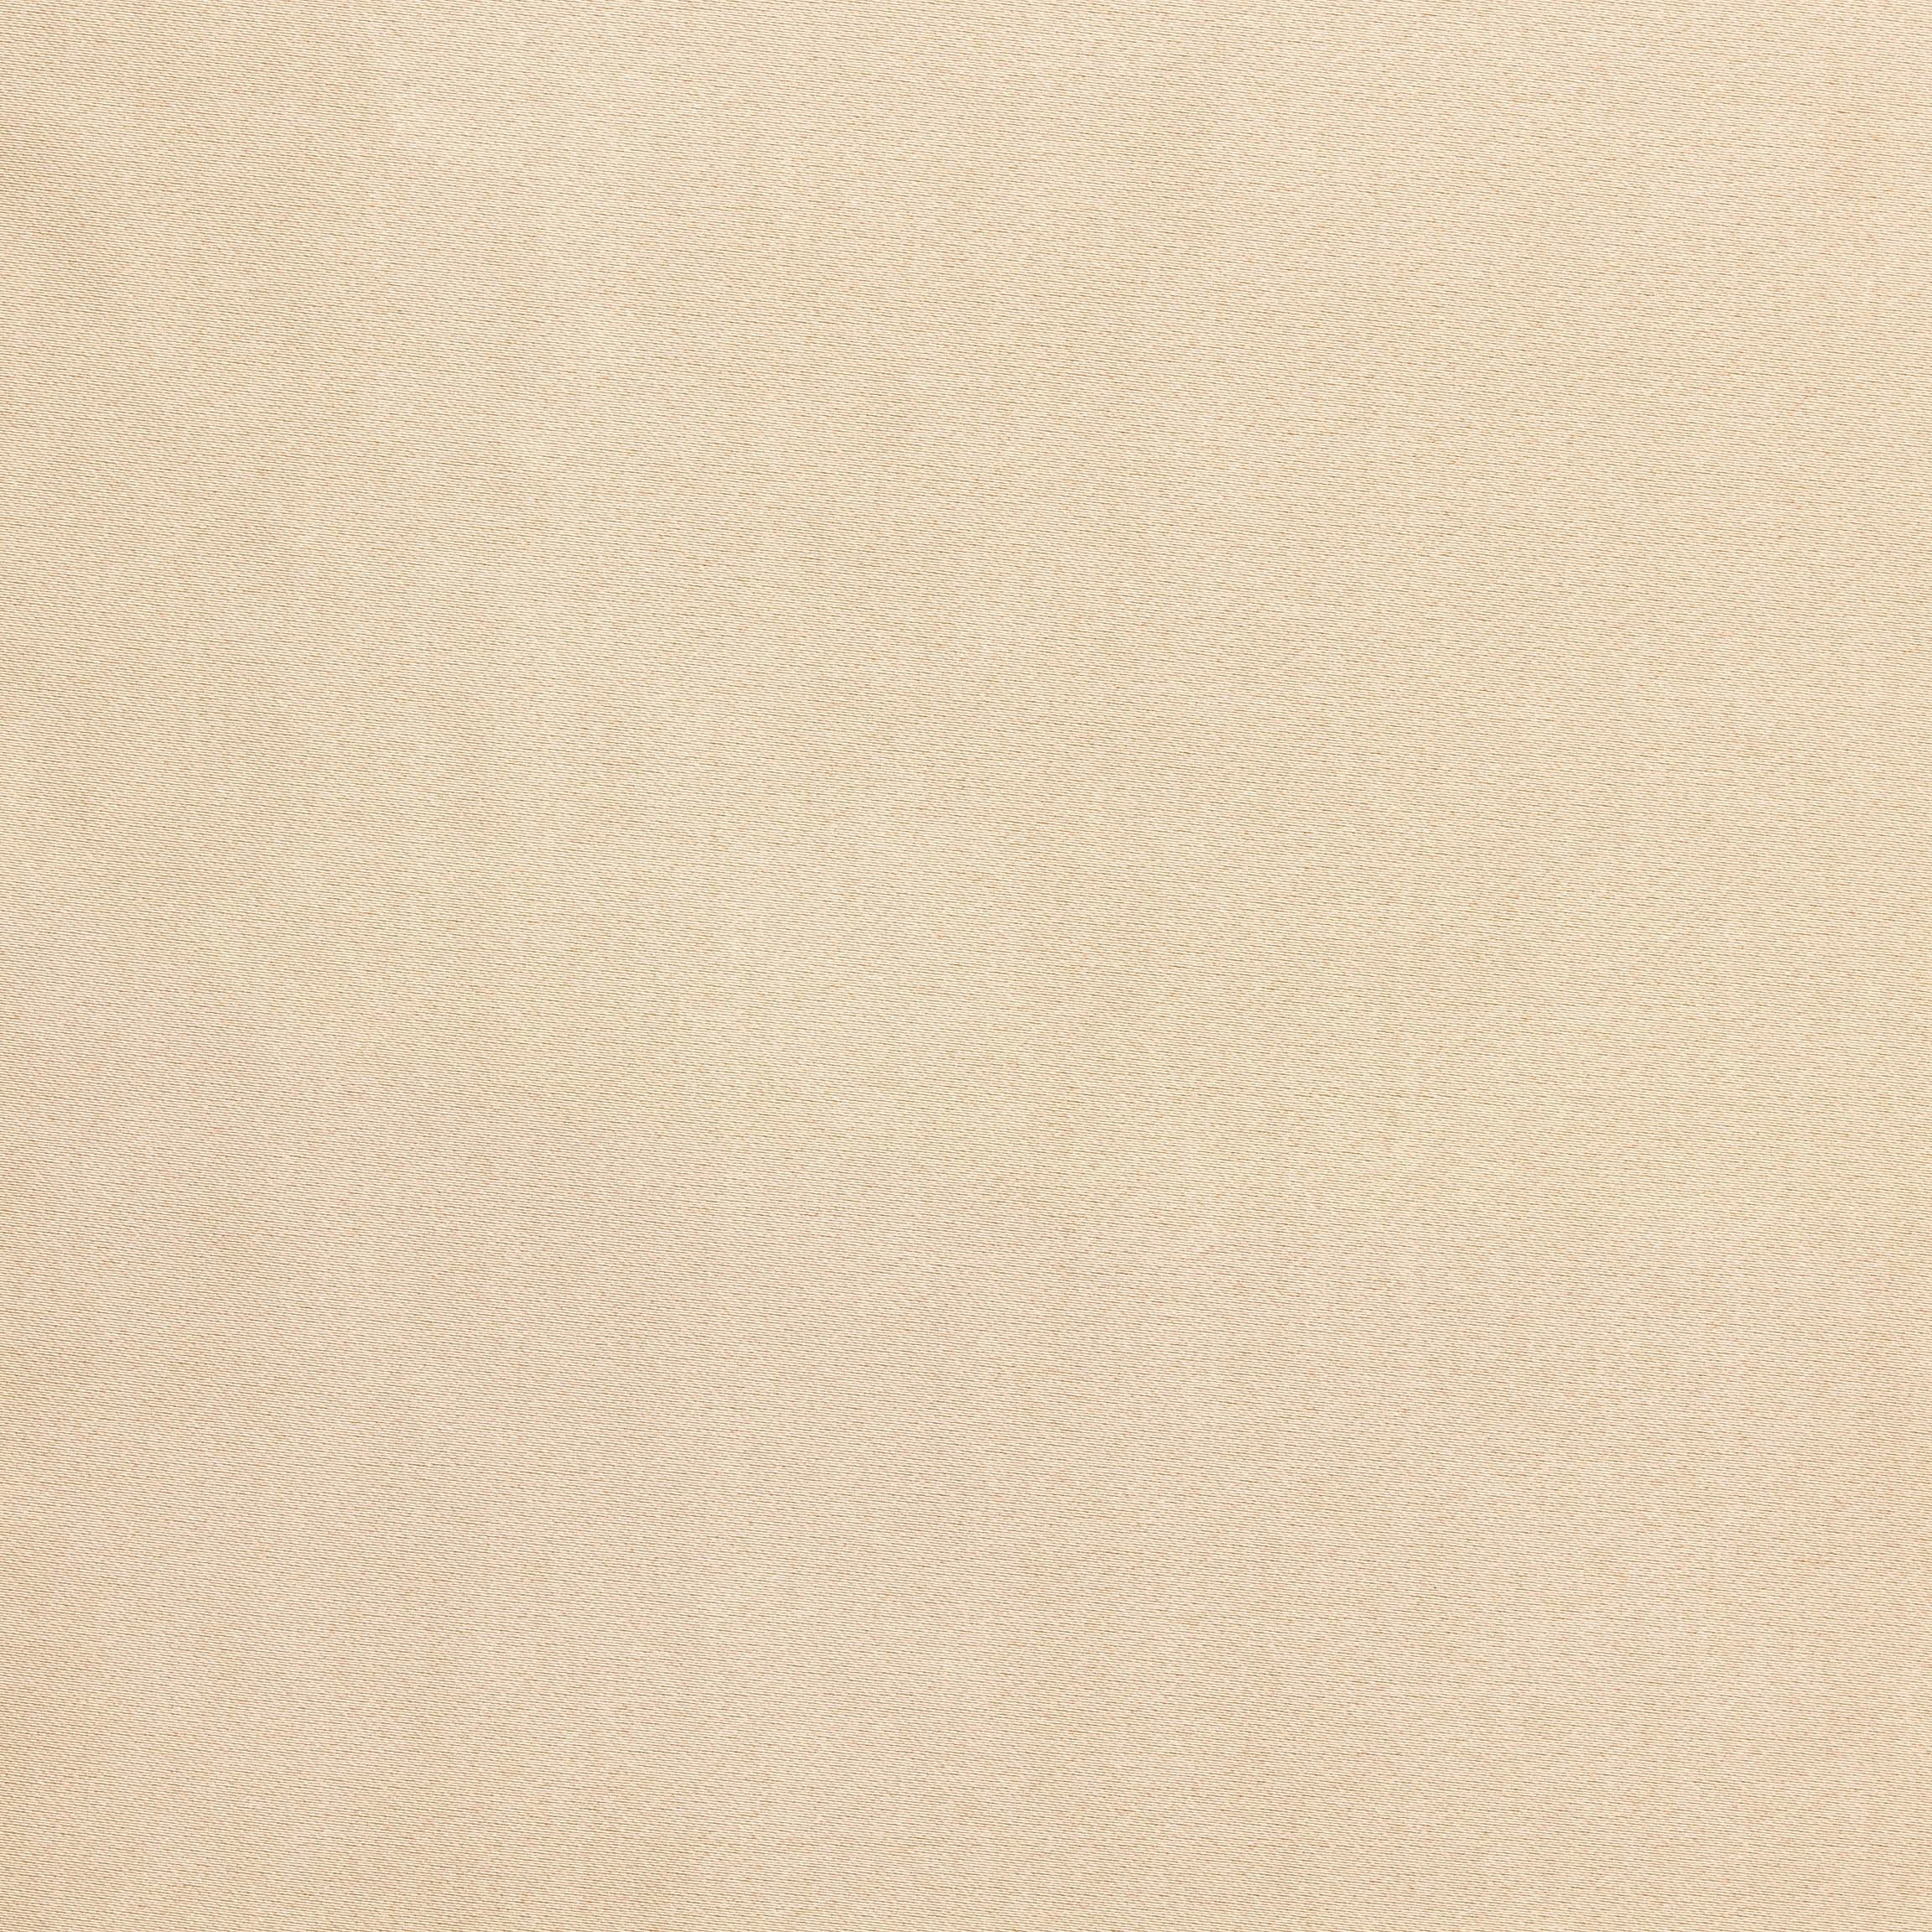  Портьерная ткань MONTREAL CREAM, ширина 280 см  - Фото